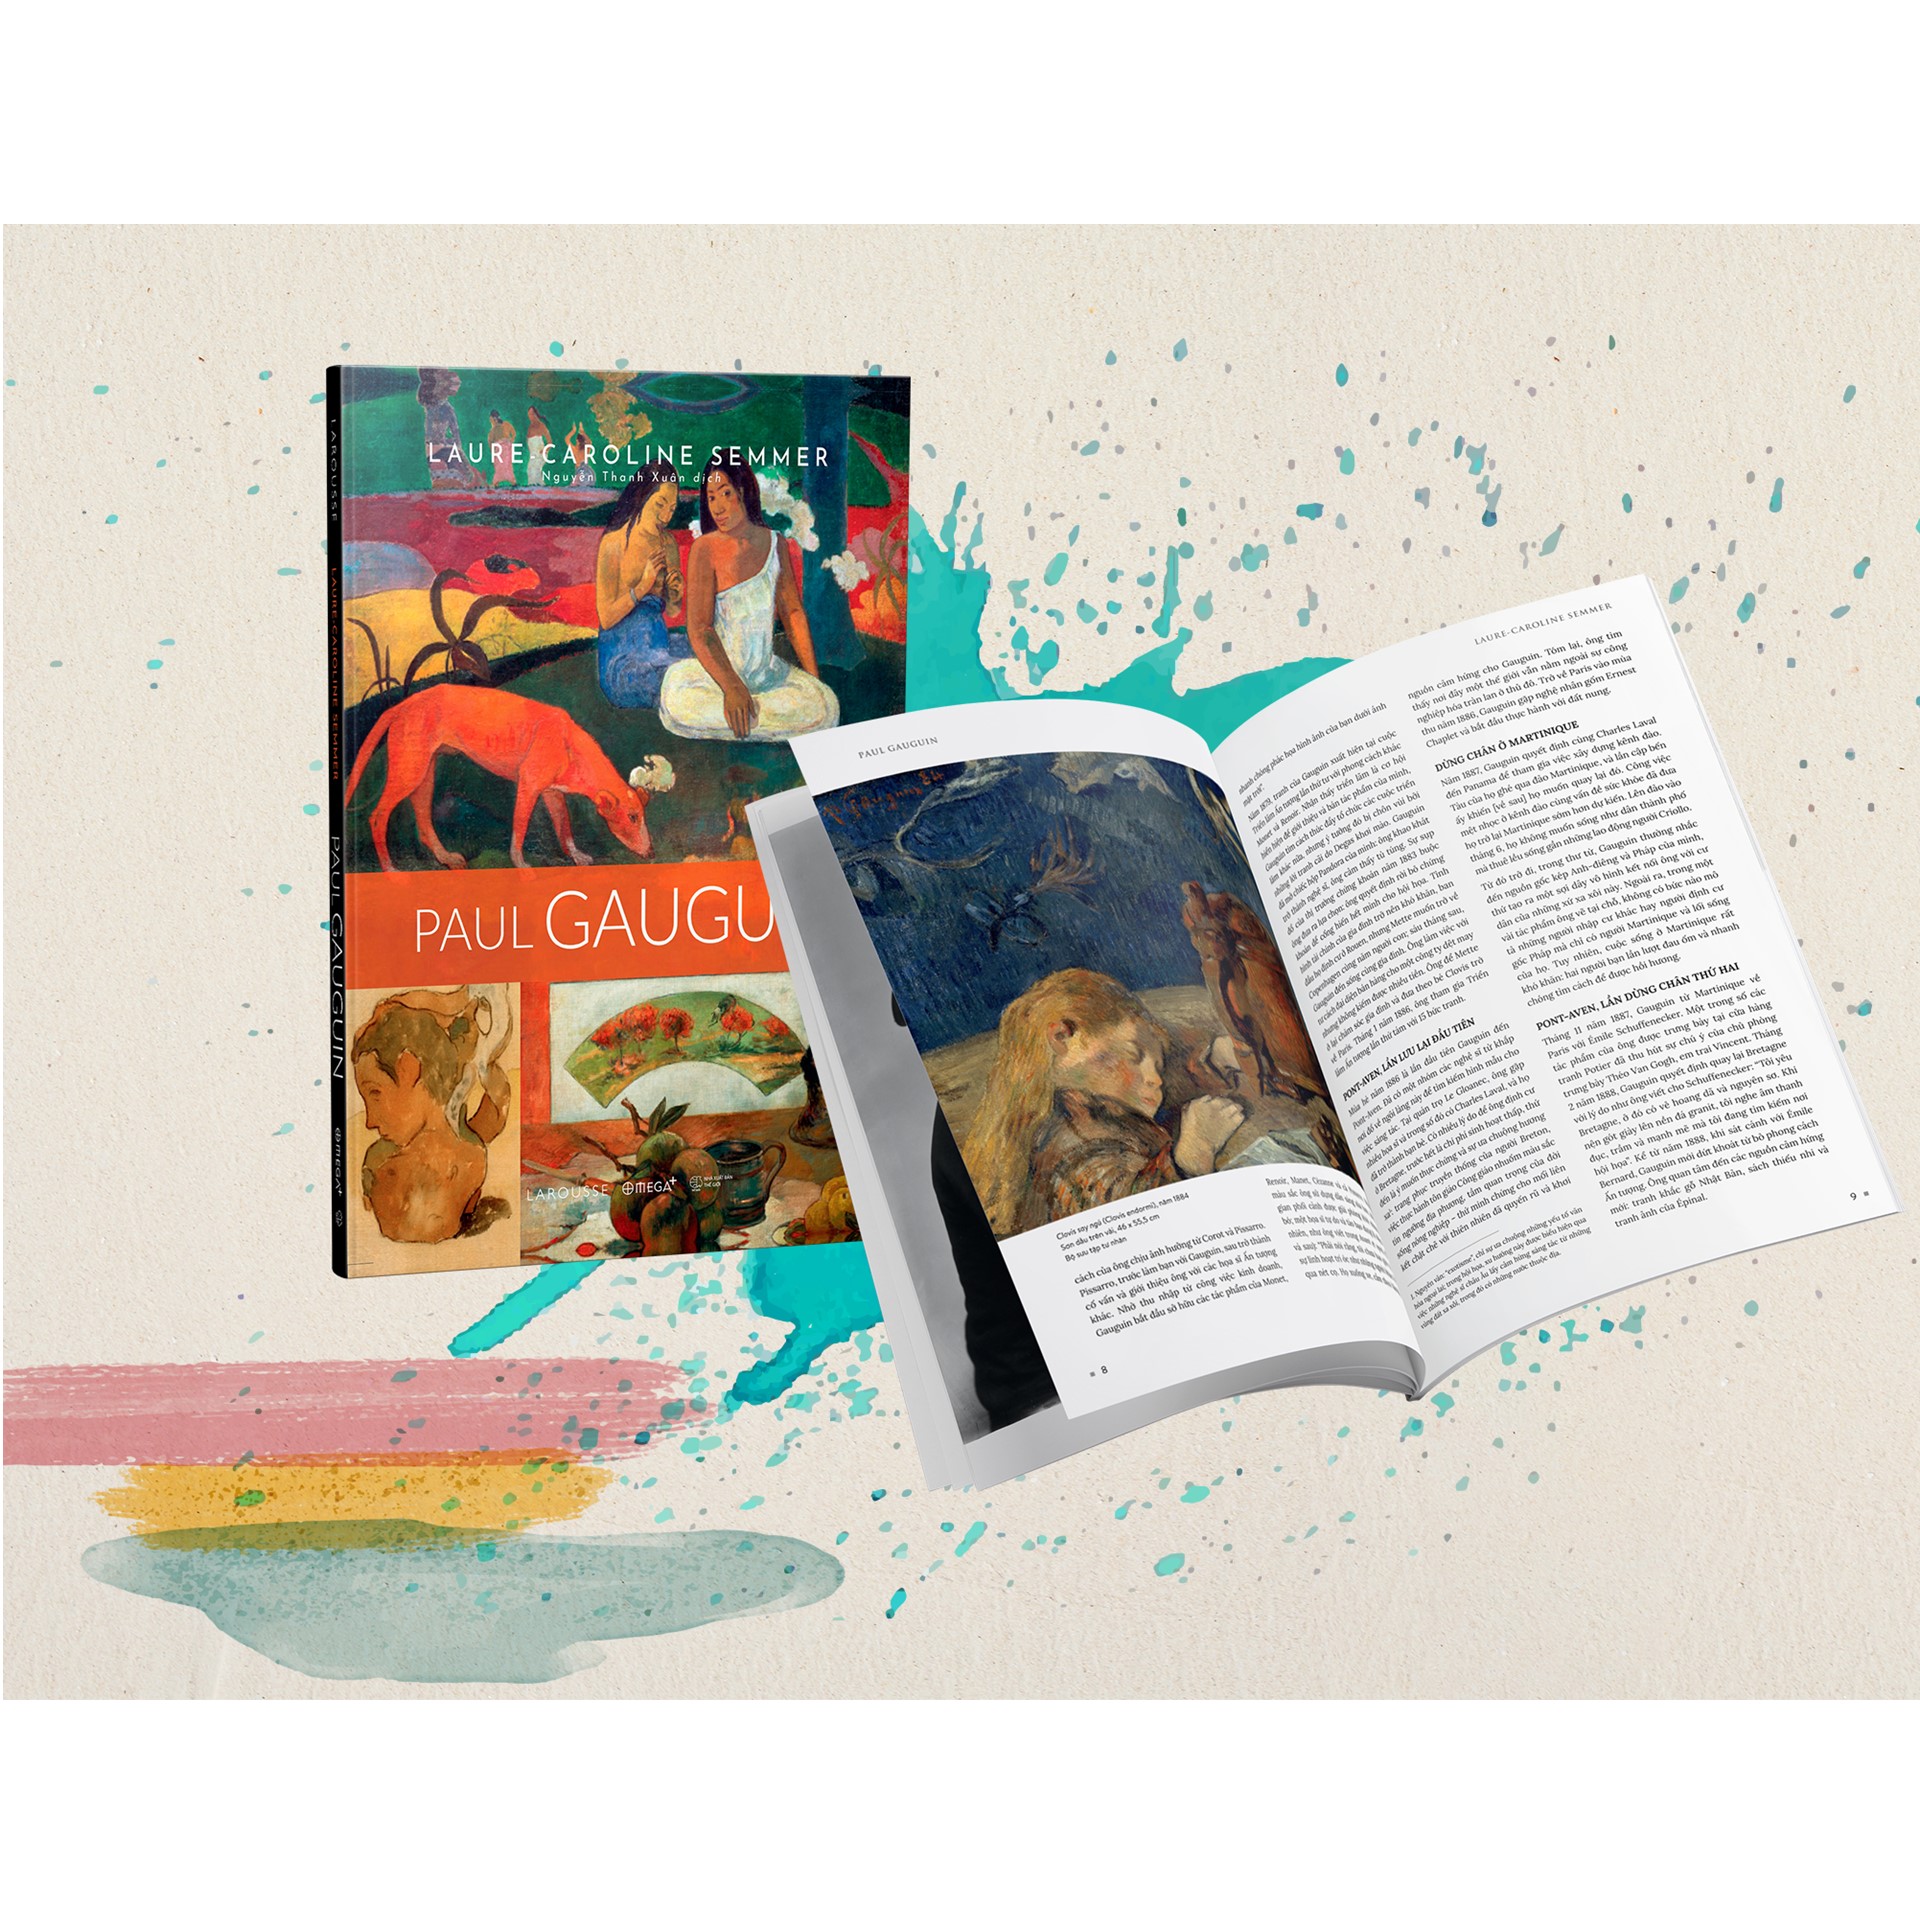 Combo Sách Về Những Danh Họa Vĩ Đại Nhất Thế Kỷ XIX : Vincent Van Gogh + Paul Gauguin